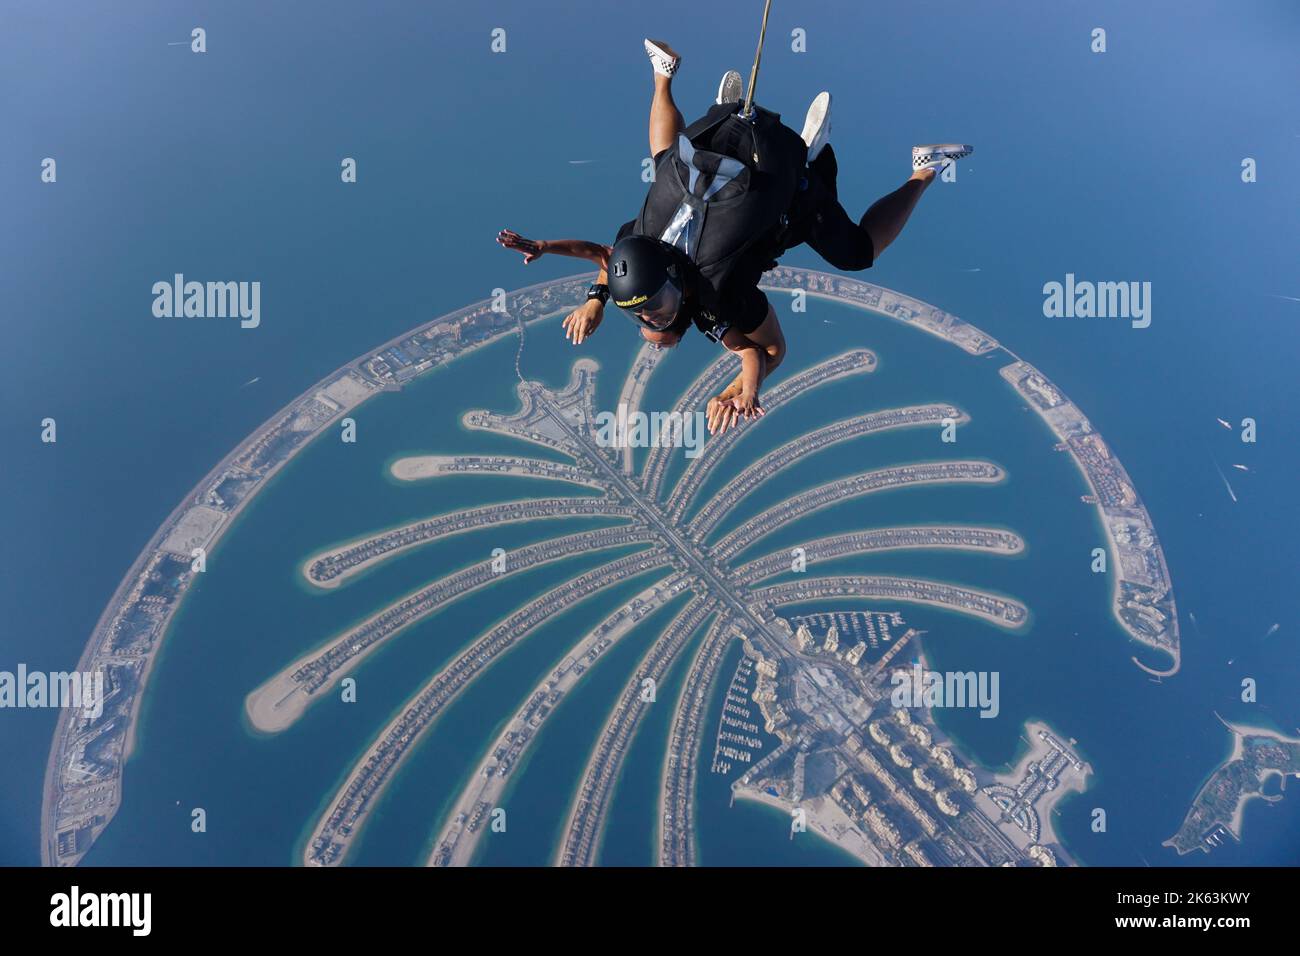 Tandem-Fallschirmspringer schweben über Palm Jumeirah, einer berühmten künstlichen Insel, eine wichtige Attraktion und Wahrzeichen der modernen Stadt Dubai, Vereinigte Arabische Emirate. Stockfoto